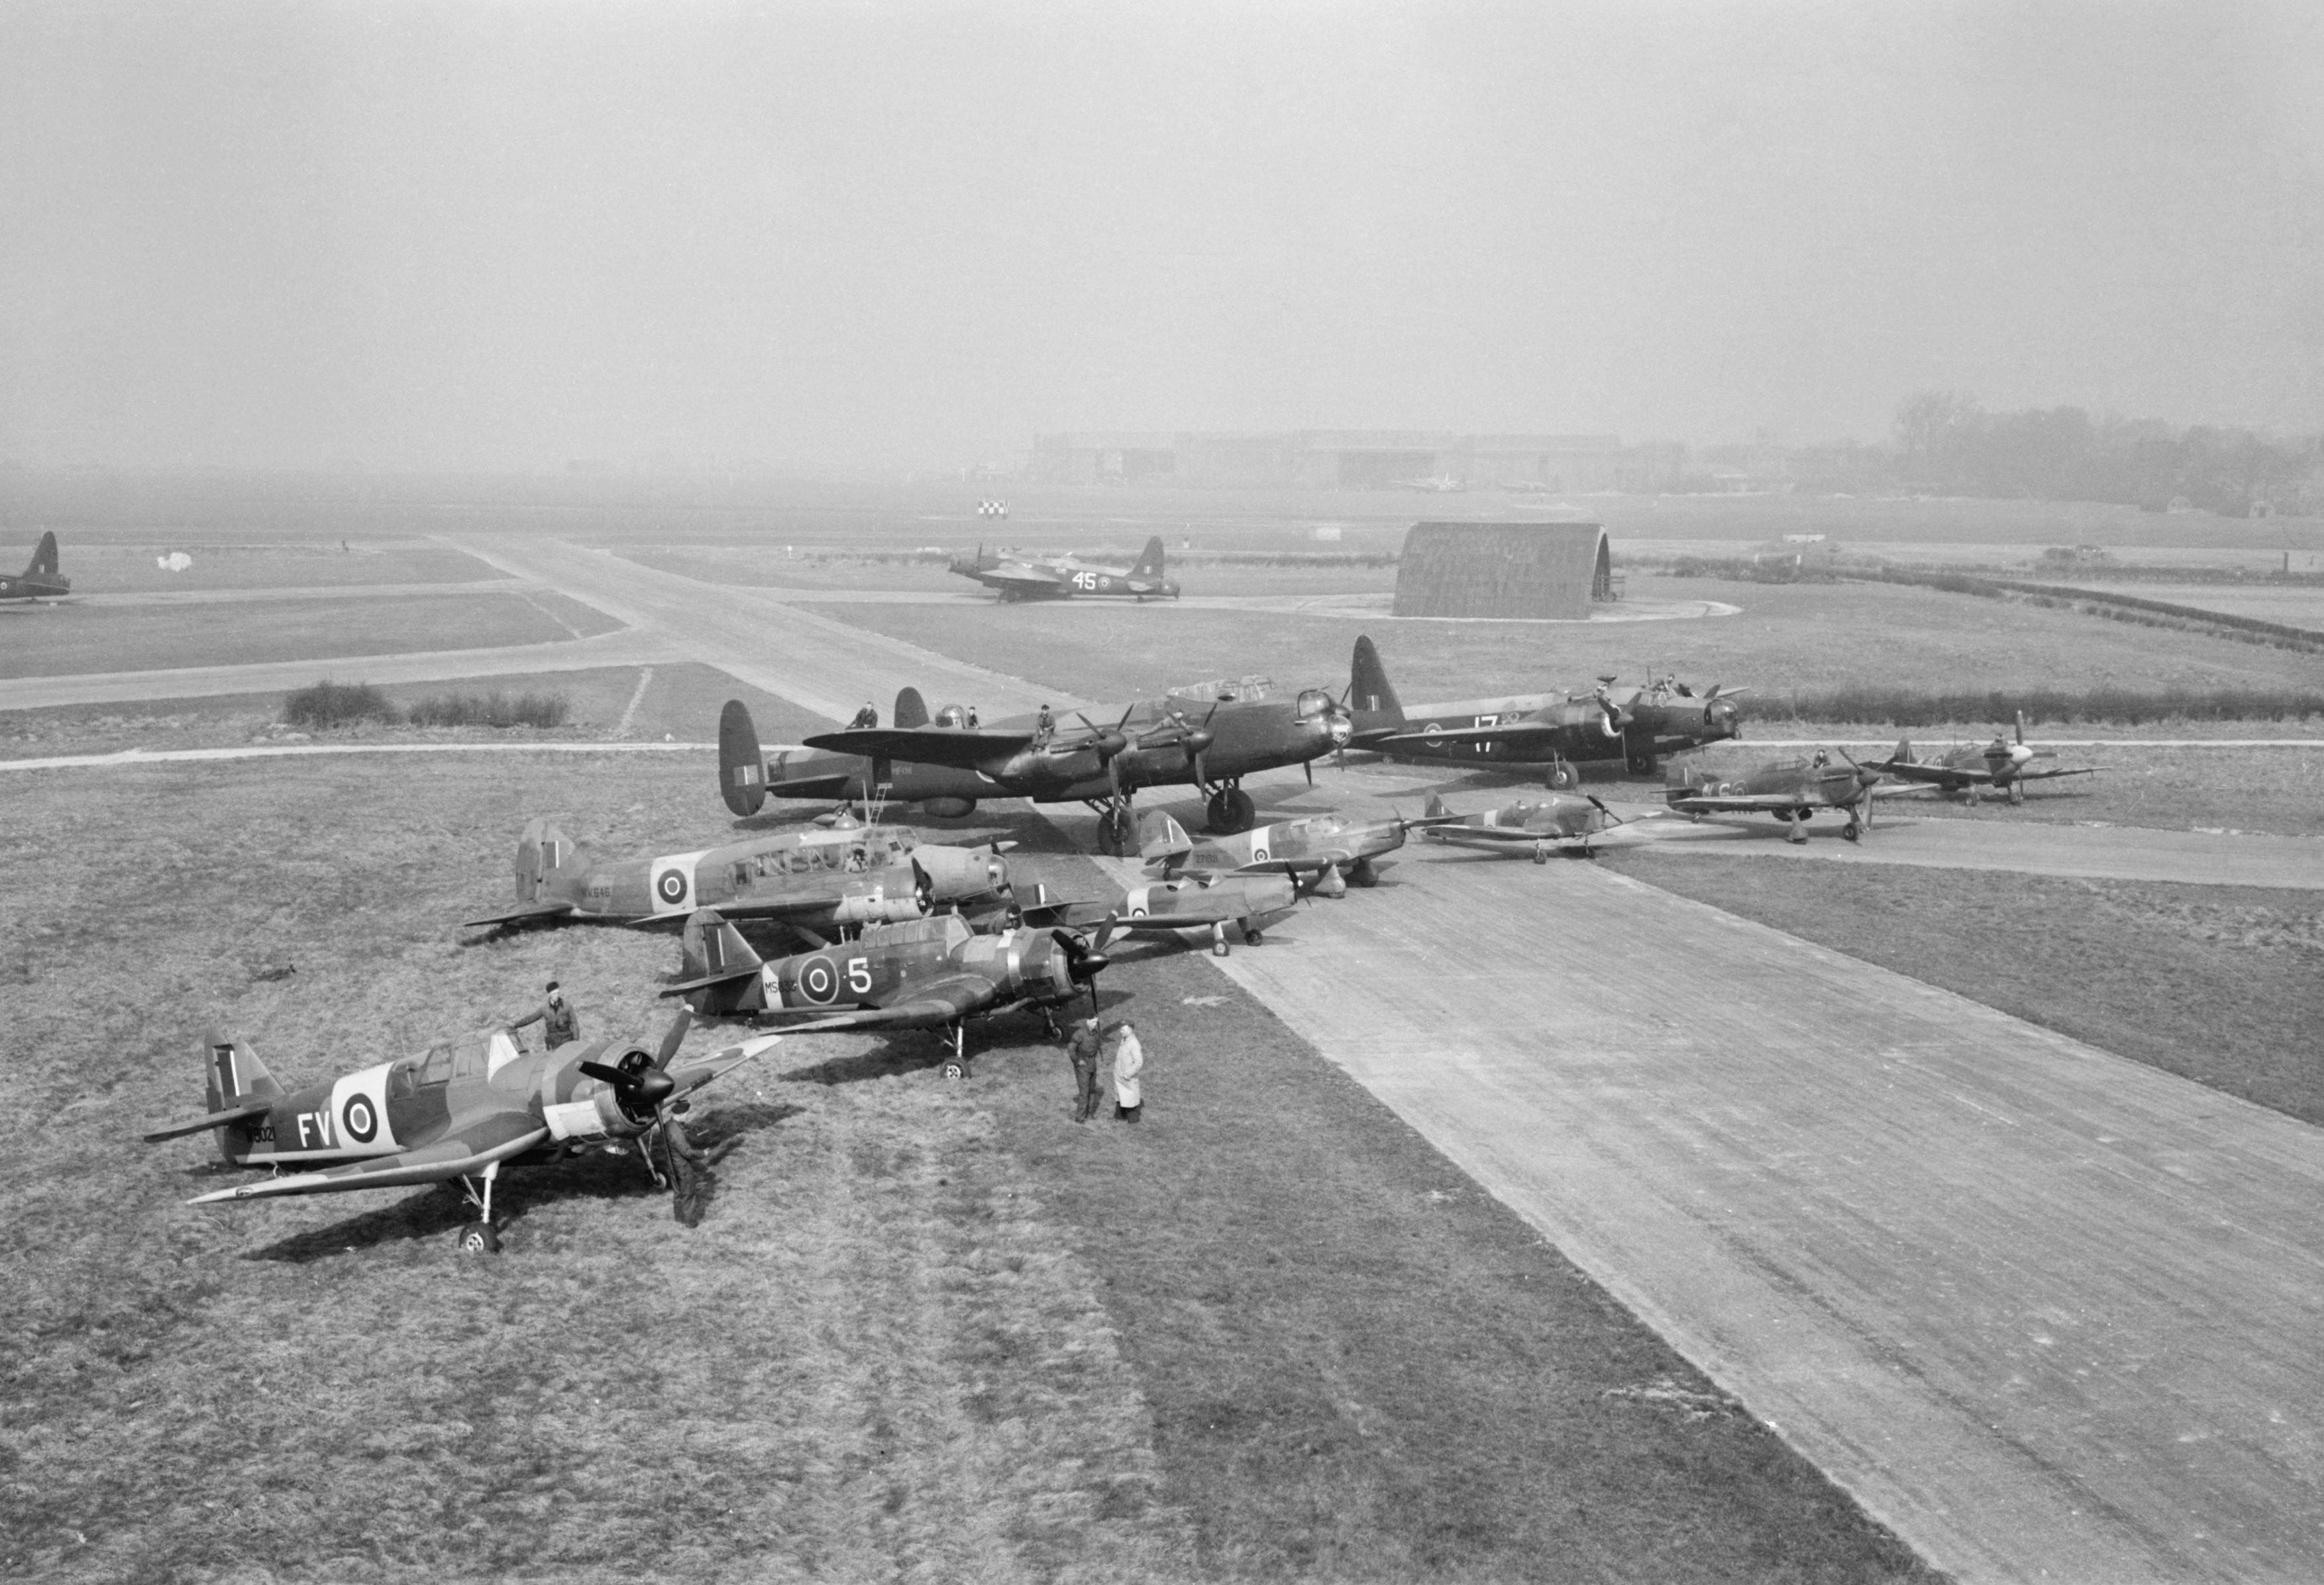 Various aircraft at RAF Mandy, England, United Kingdom, 1940s